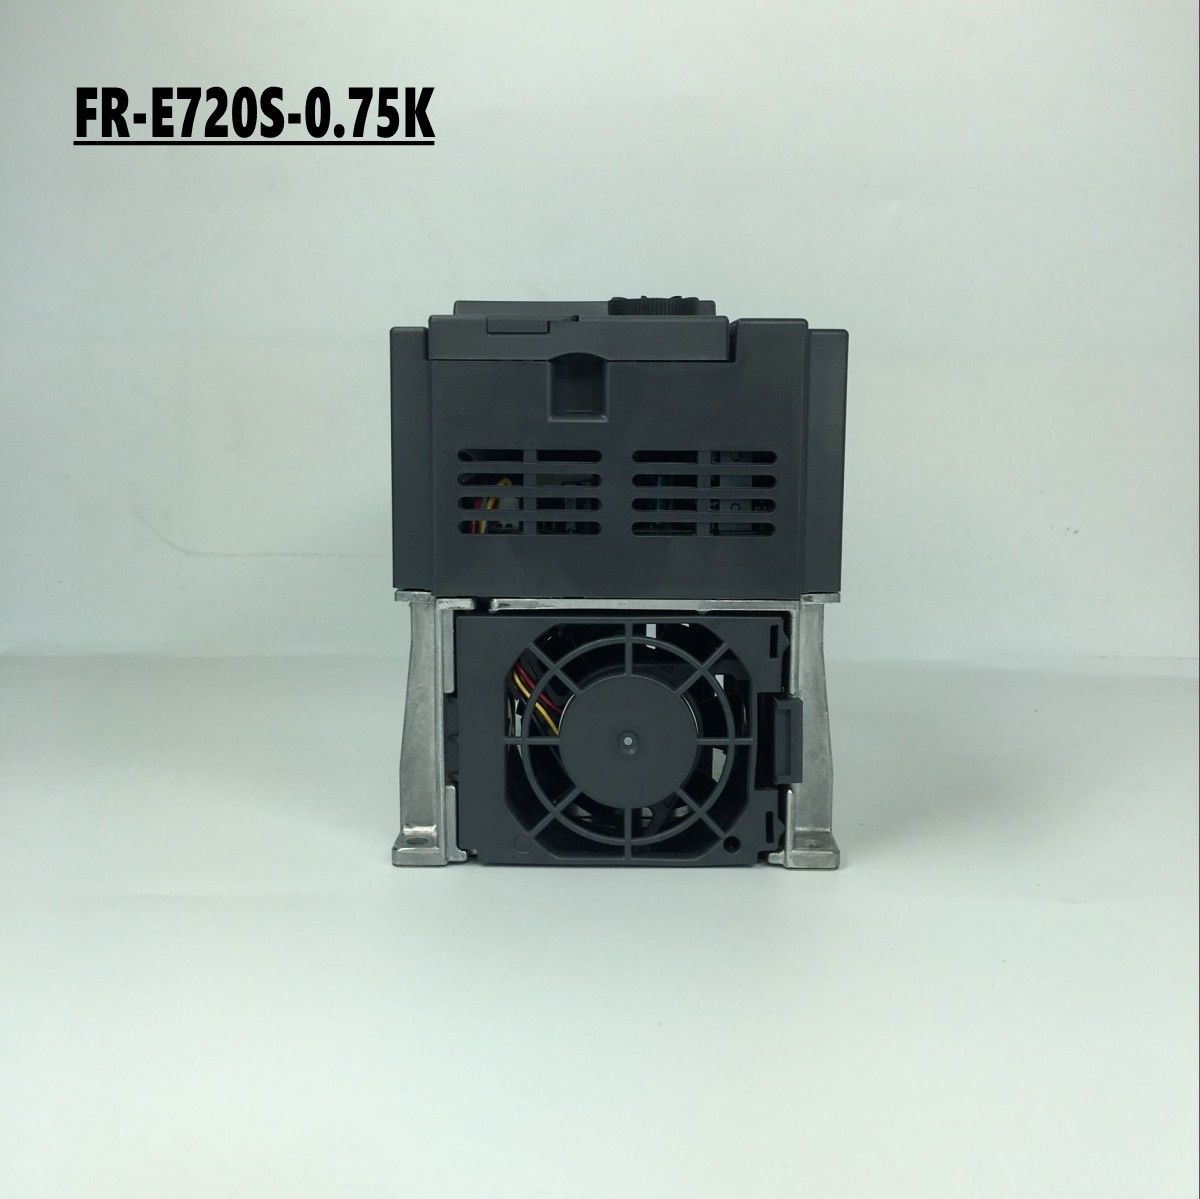 Brand New MITSUBISHI inverter FR-E720S-0.75K In Box FRE720S0.75K - zum Schließen ins Bild klicken